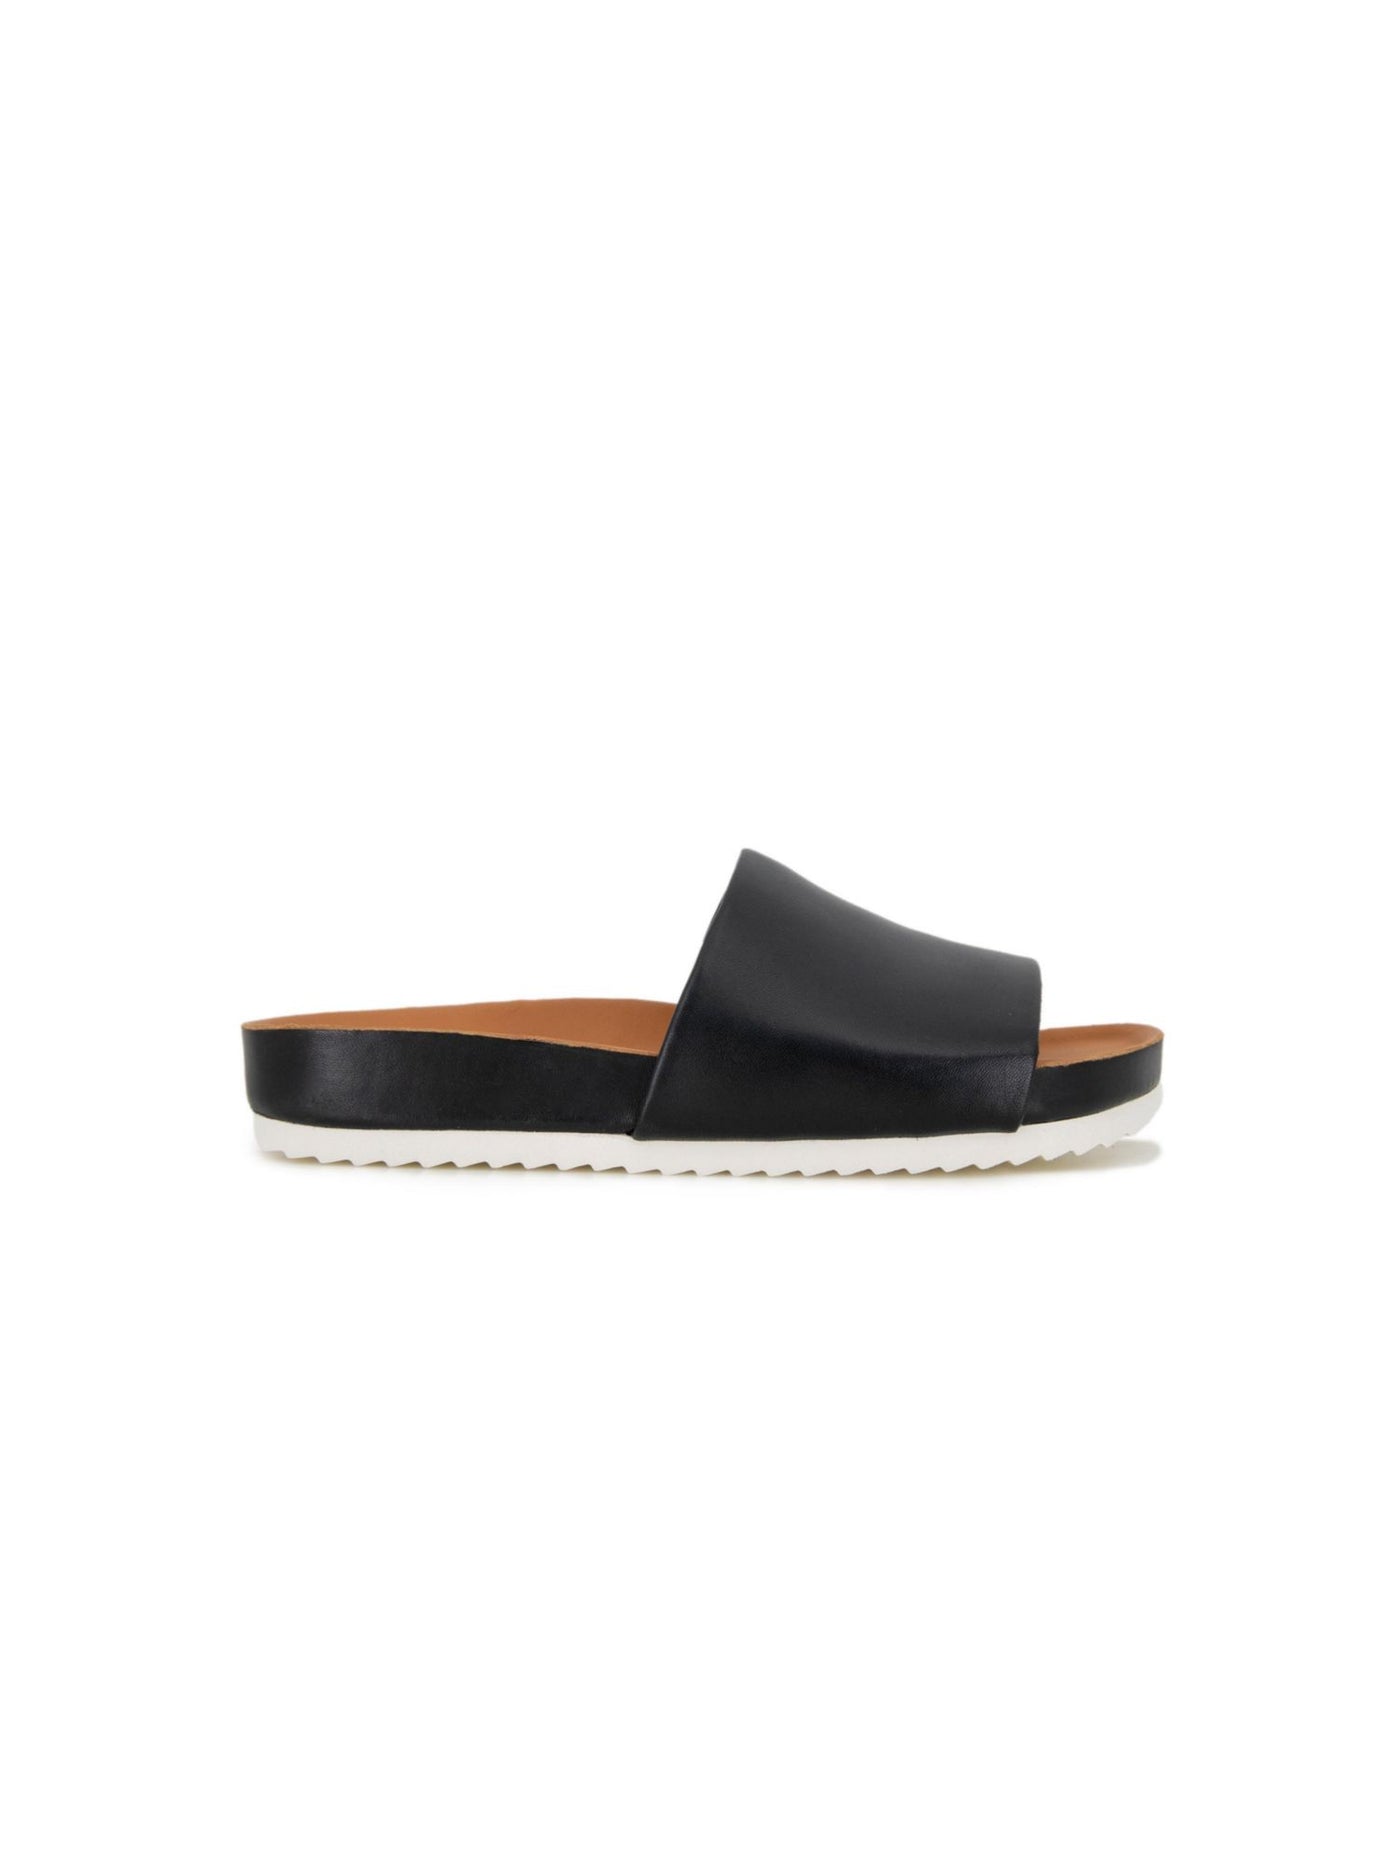 GENTLE SOULS KENNETH COLE Mens Black Padded Goring Comfort Montauk Round Toe Platform Leather Slide Sandals Shoes 13